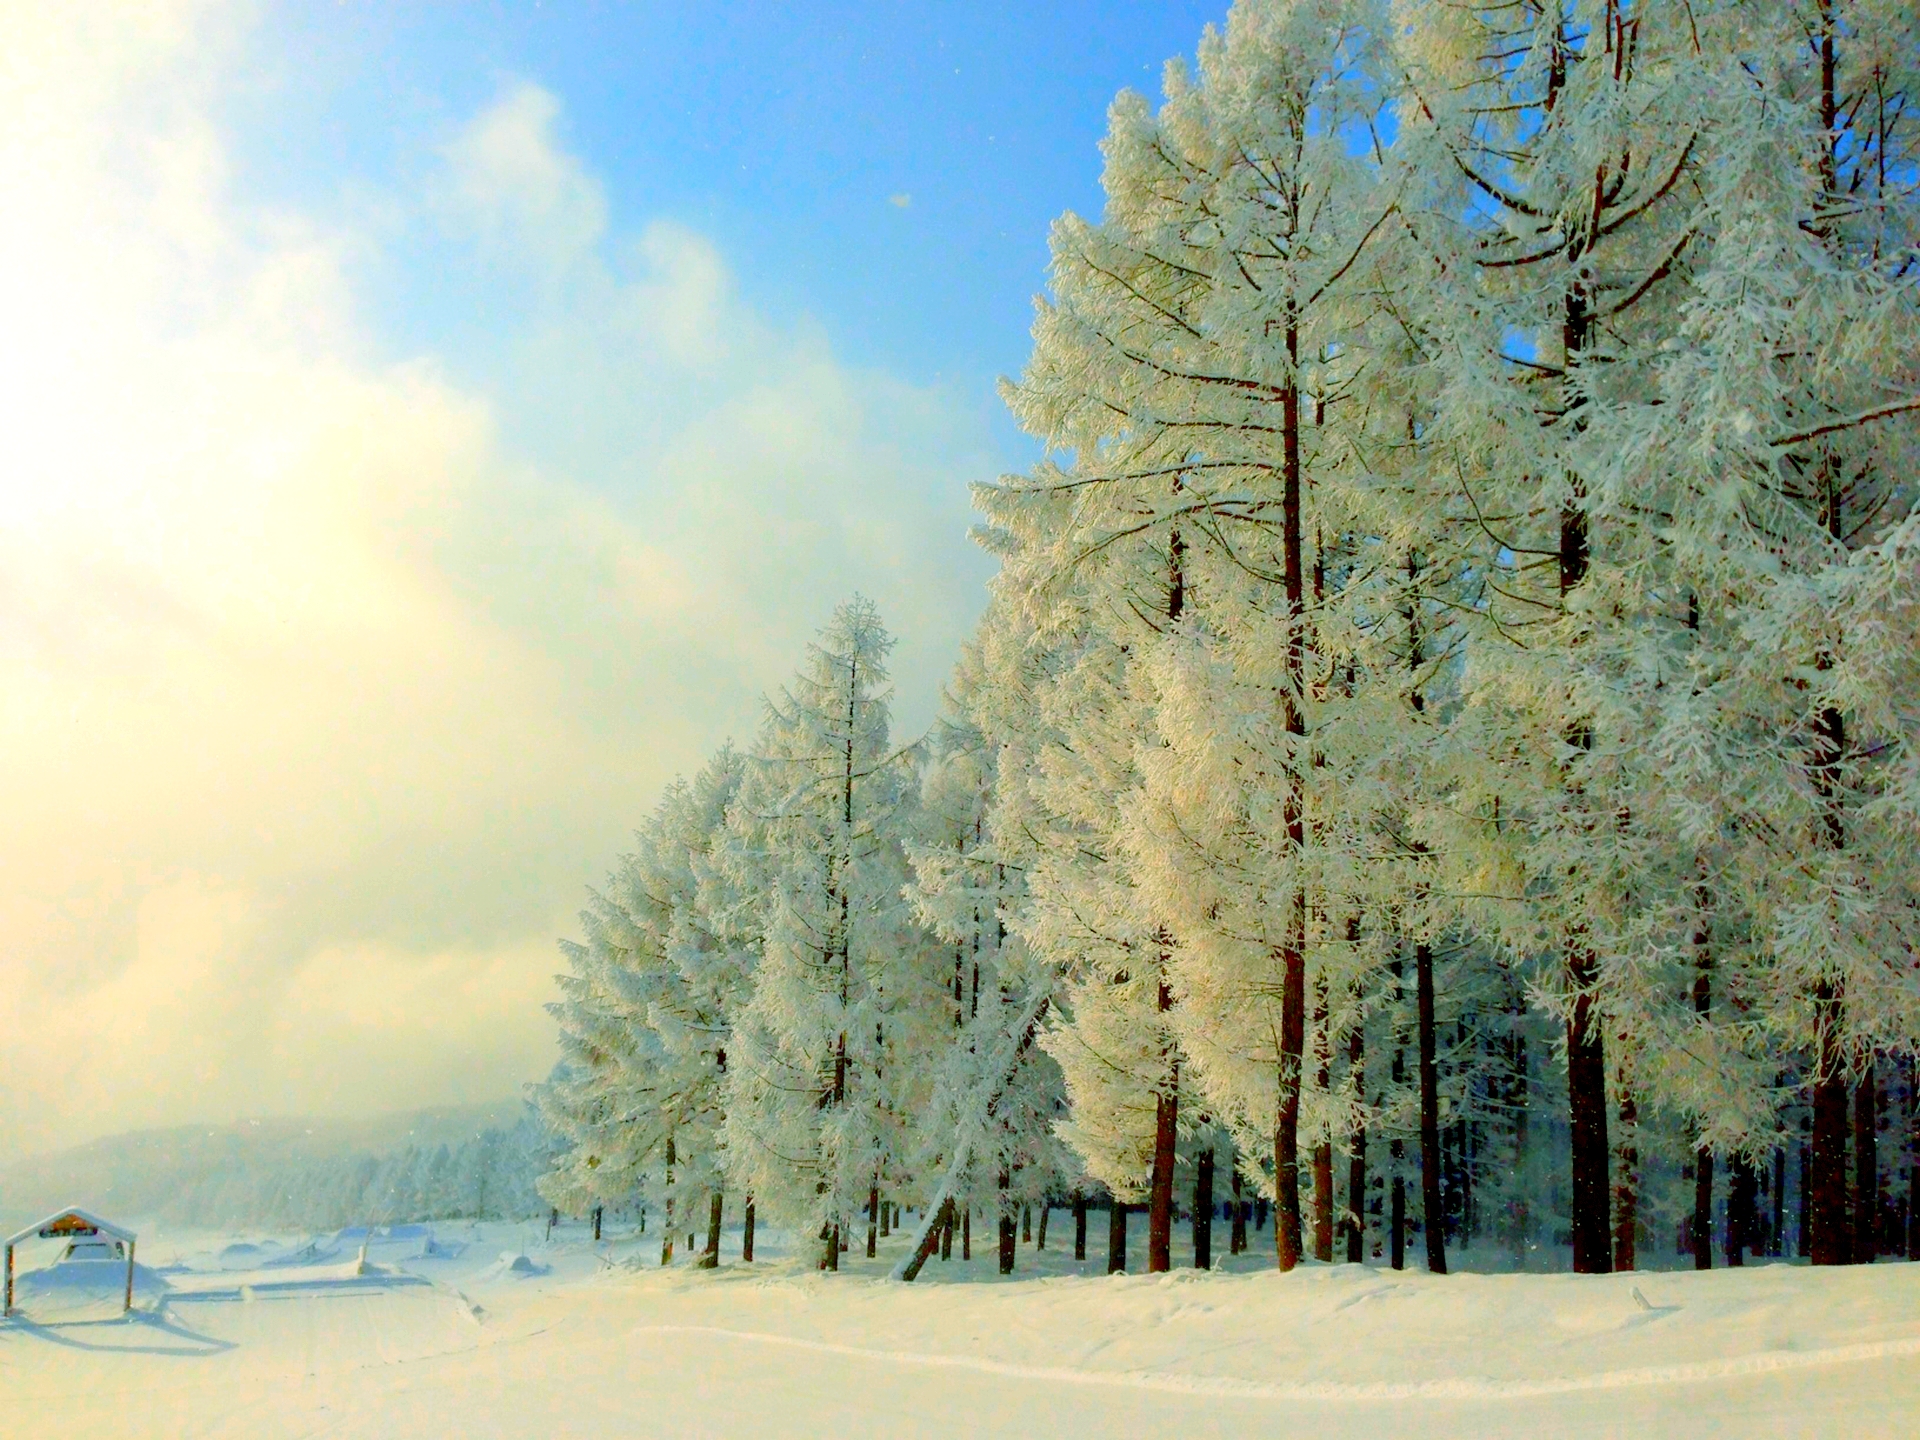 Скачать обои бесплатно Зима, Снег, Лес, Парк, Дерево, Земля/природа картинка на рабочий стол ПК